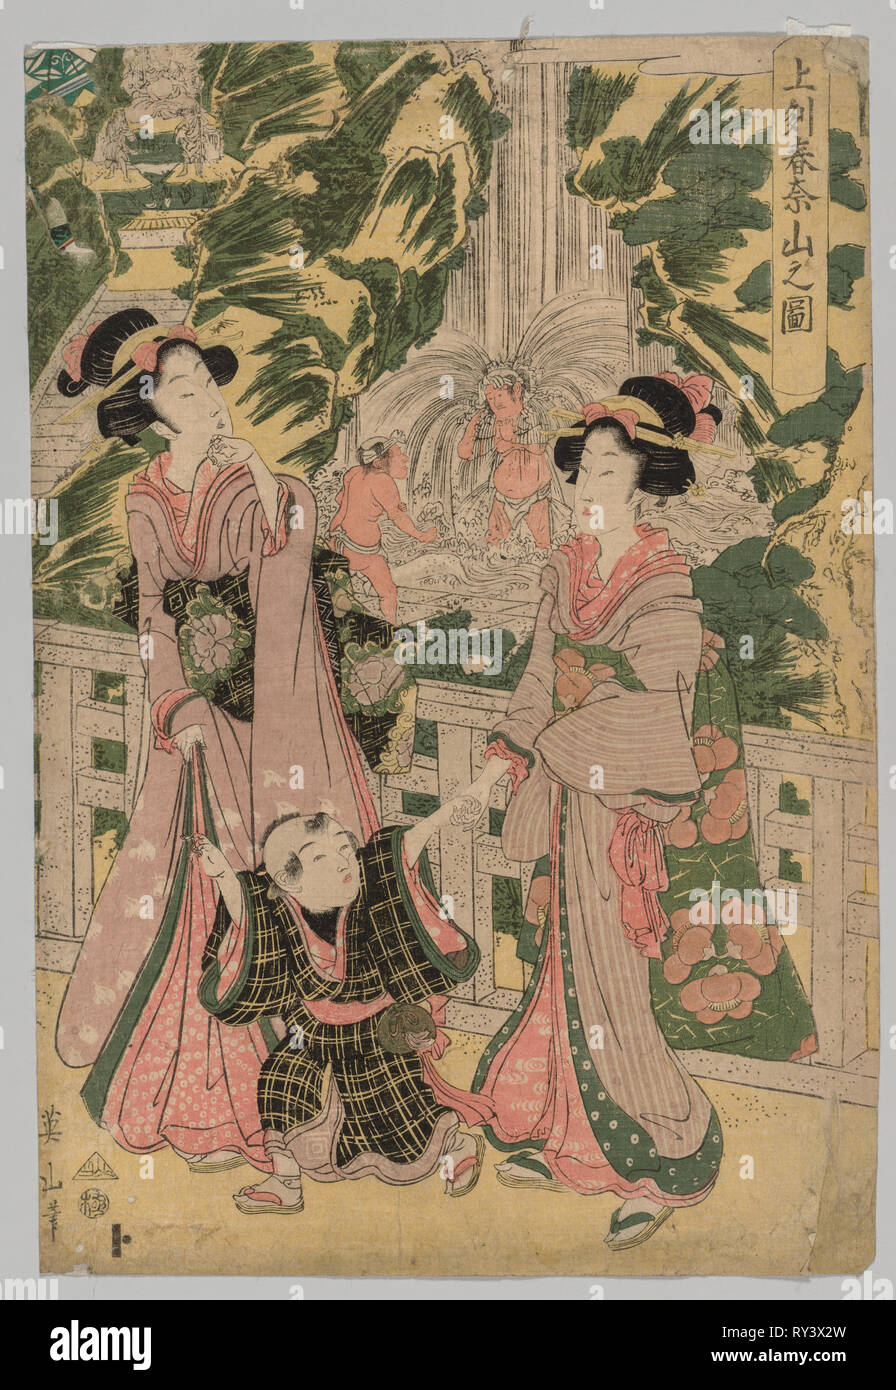 Deux petites filles et des enfants sur le pont du Temple, 1787-1867. Kikugawa Eizan (japonais, 1787-1867). Gravure sur bois en couleur ; feuille : 26,1 x 37,8 cm (10 1/4 x 14 7/8 po Banque D'Images